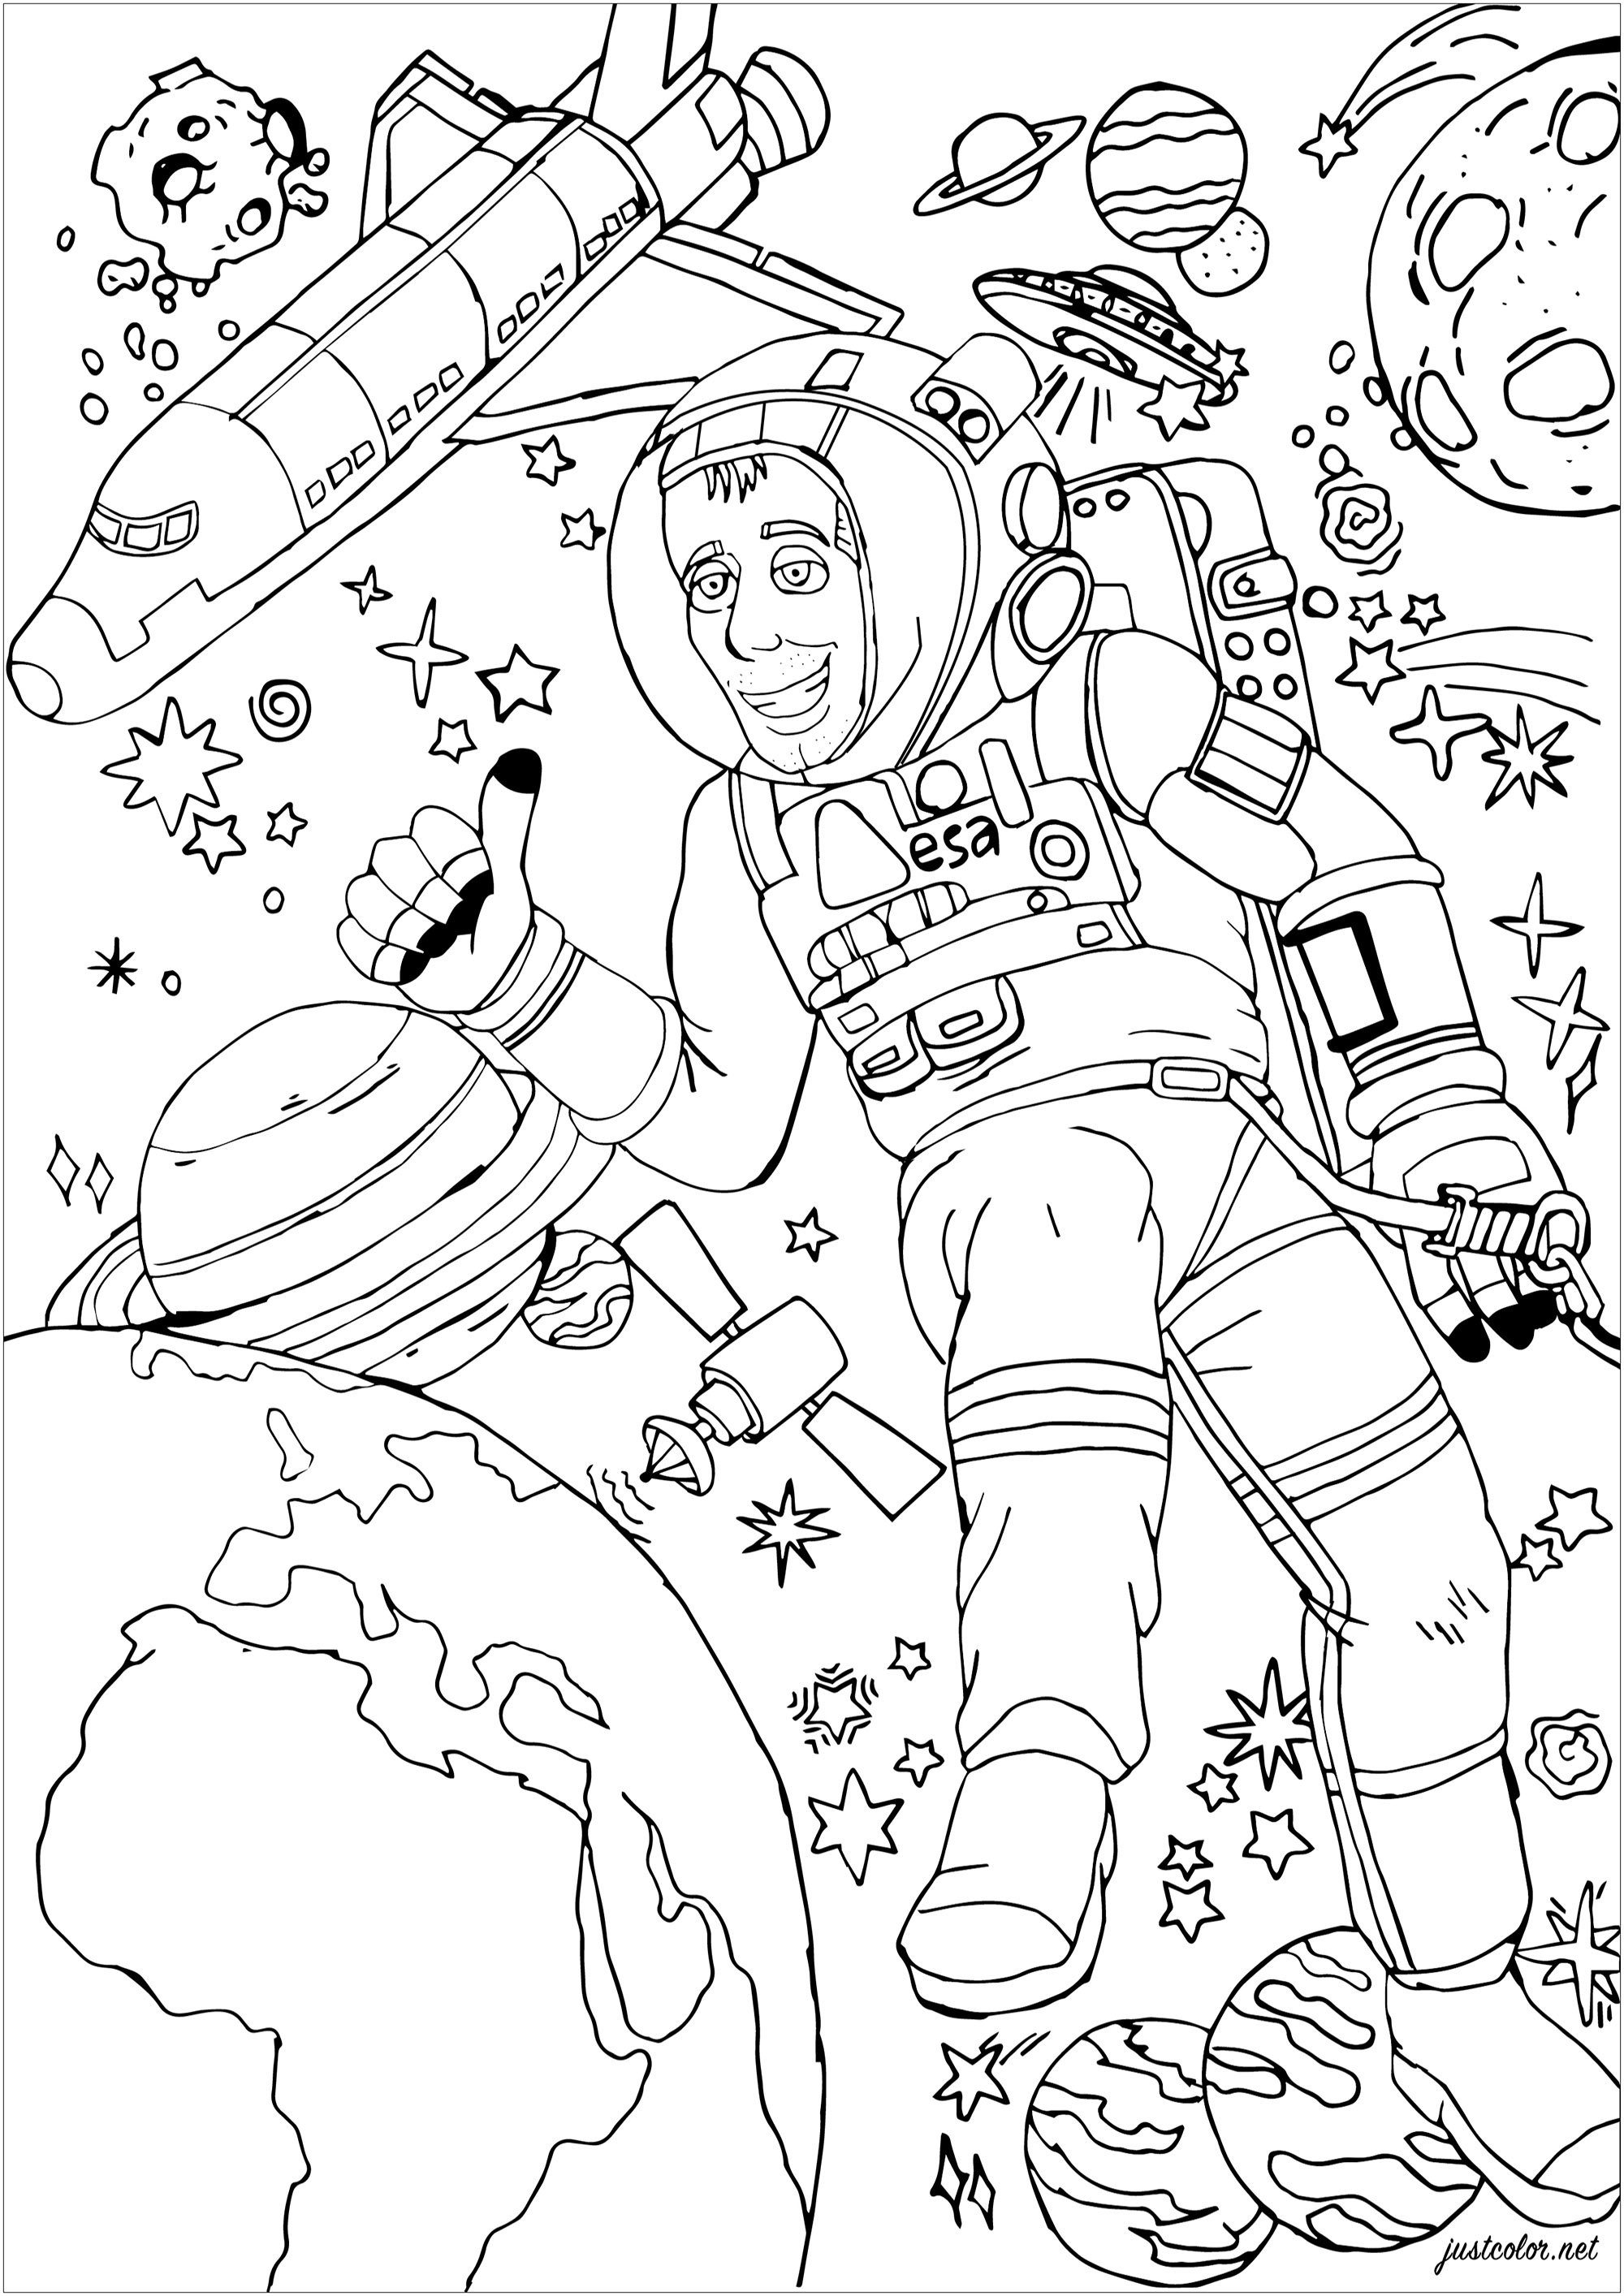 El astronauta Thomas Pesquet durante un paseo espacial.  Hay que colorear la Tierra, la Luna y varios planetas, así como un transbordador espacial.